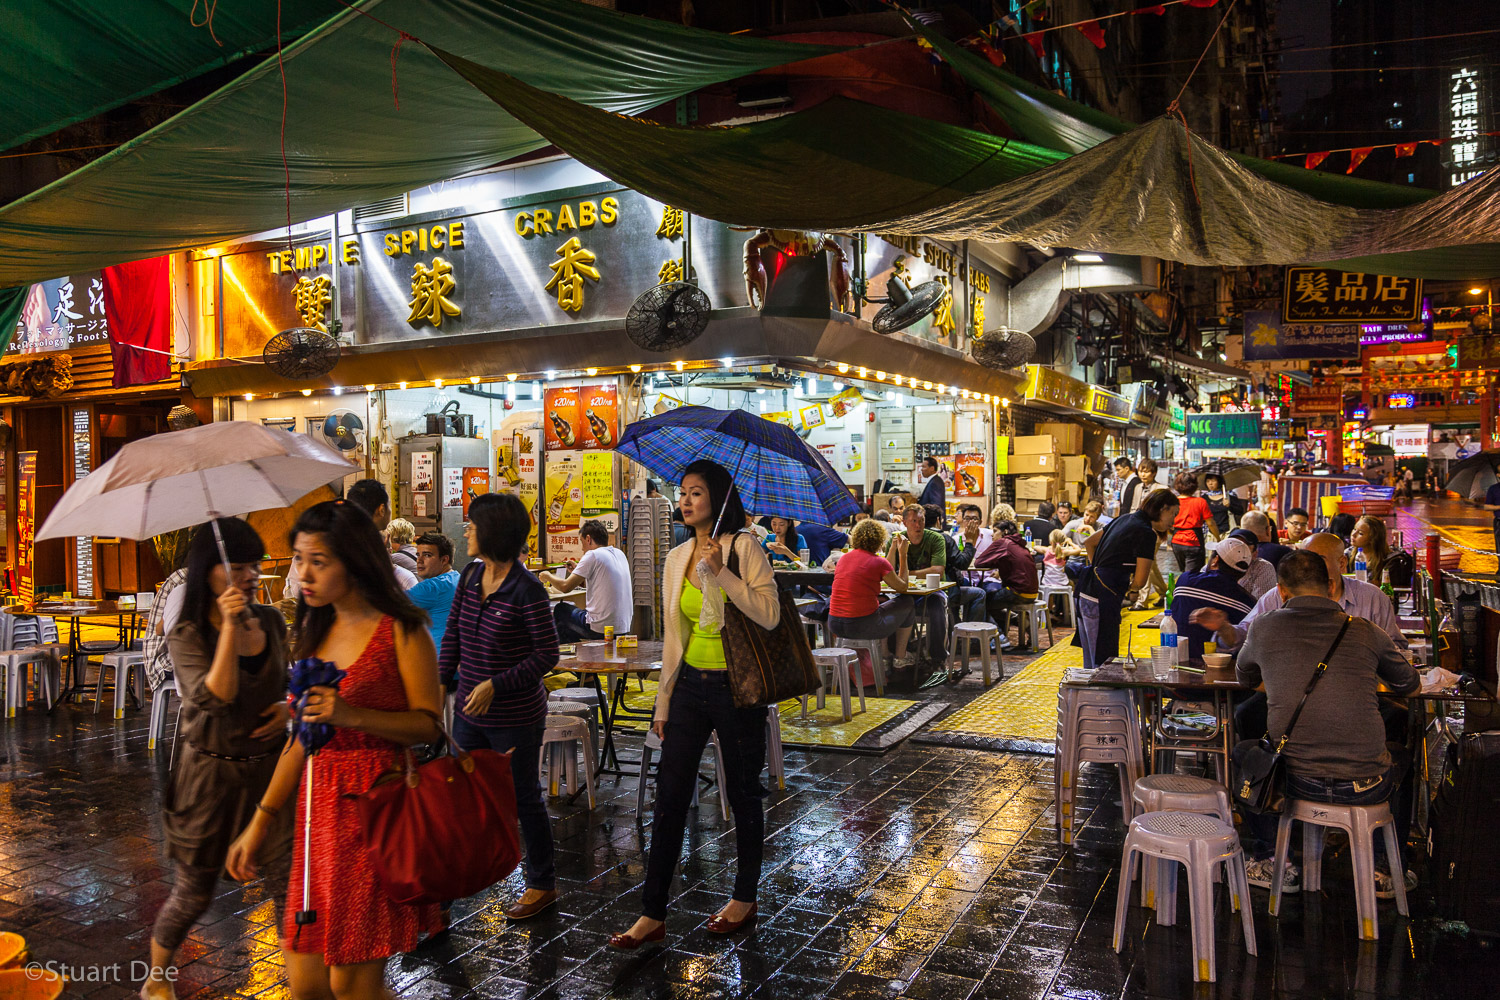  Temple Street Night Market, Hong Kong, China 